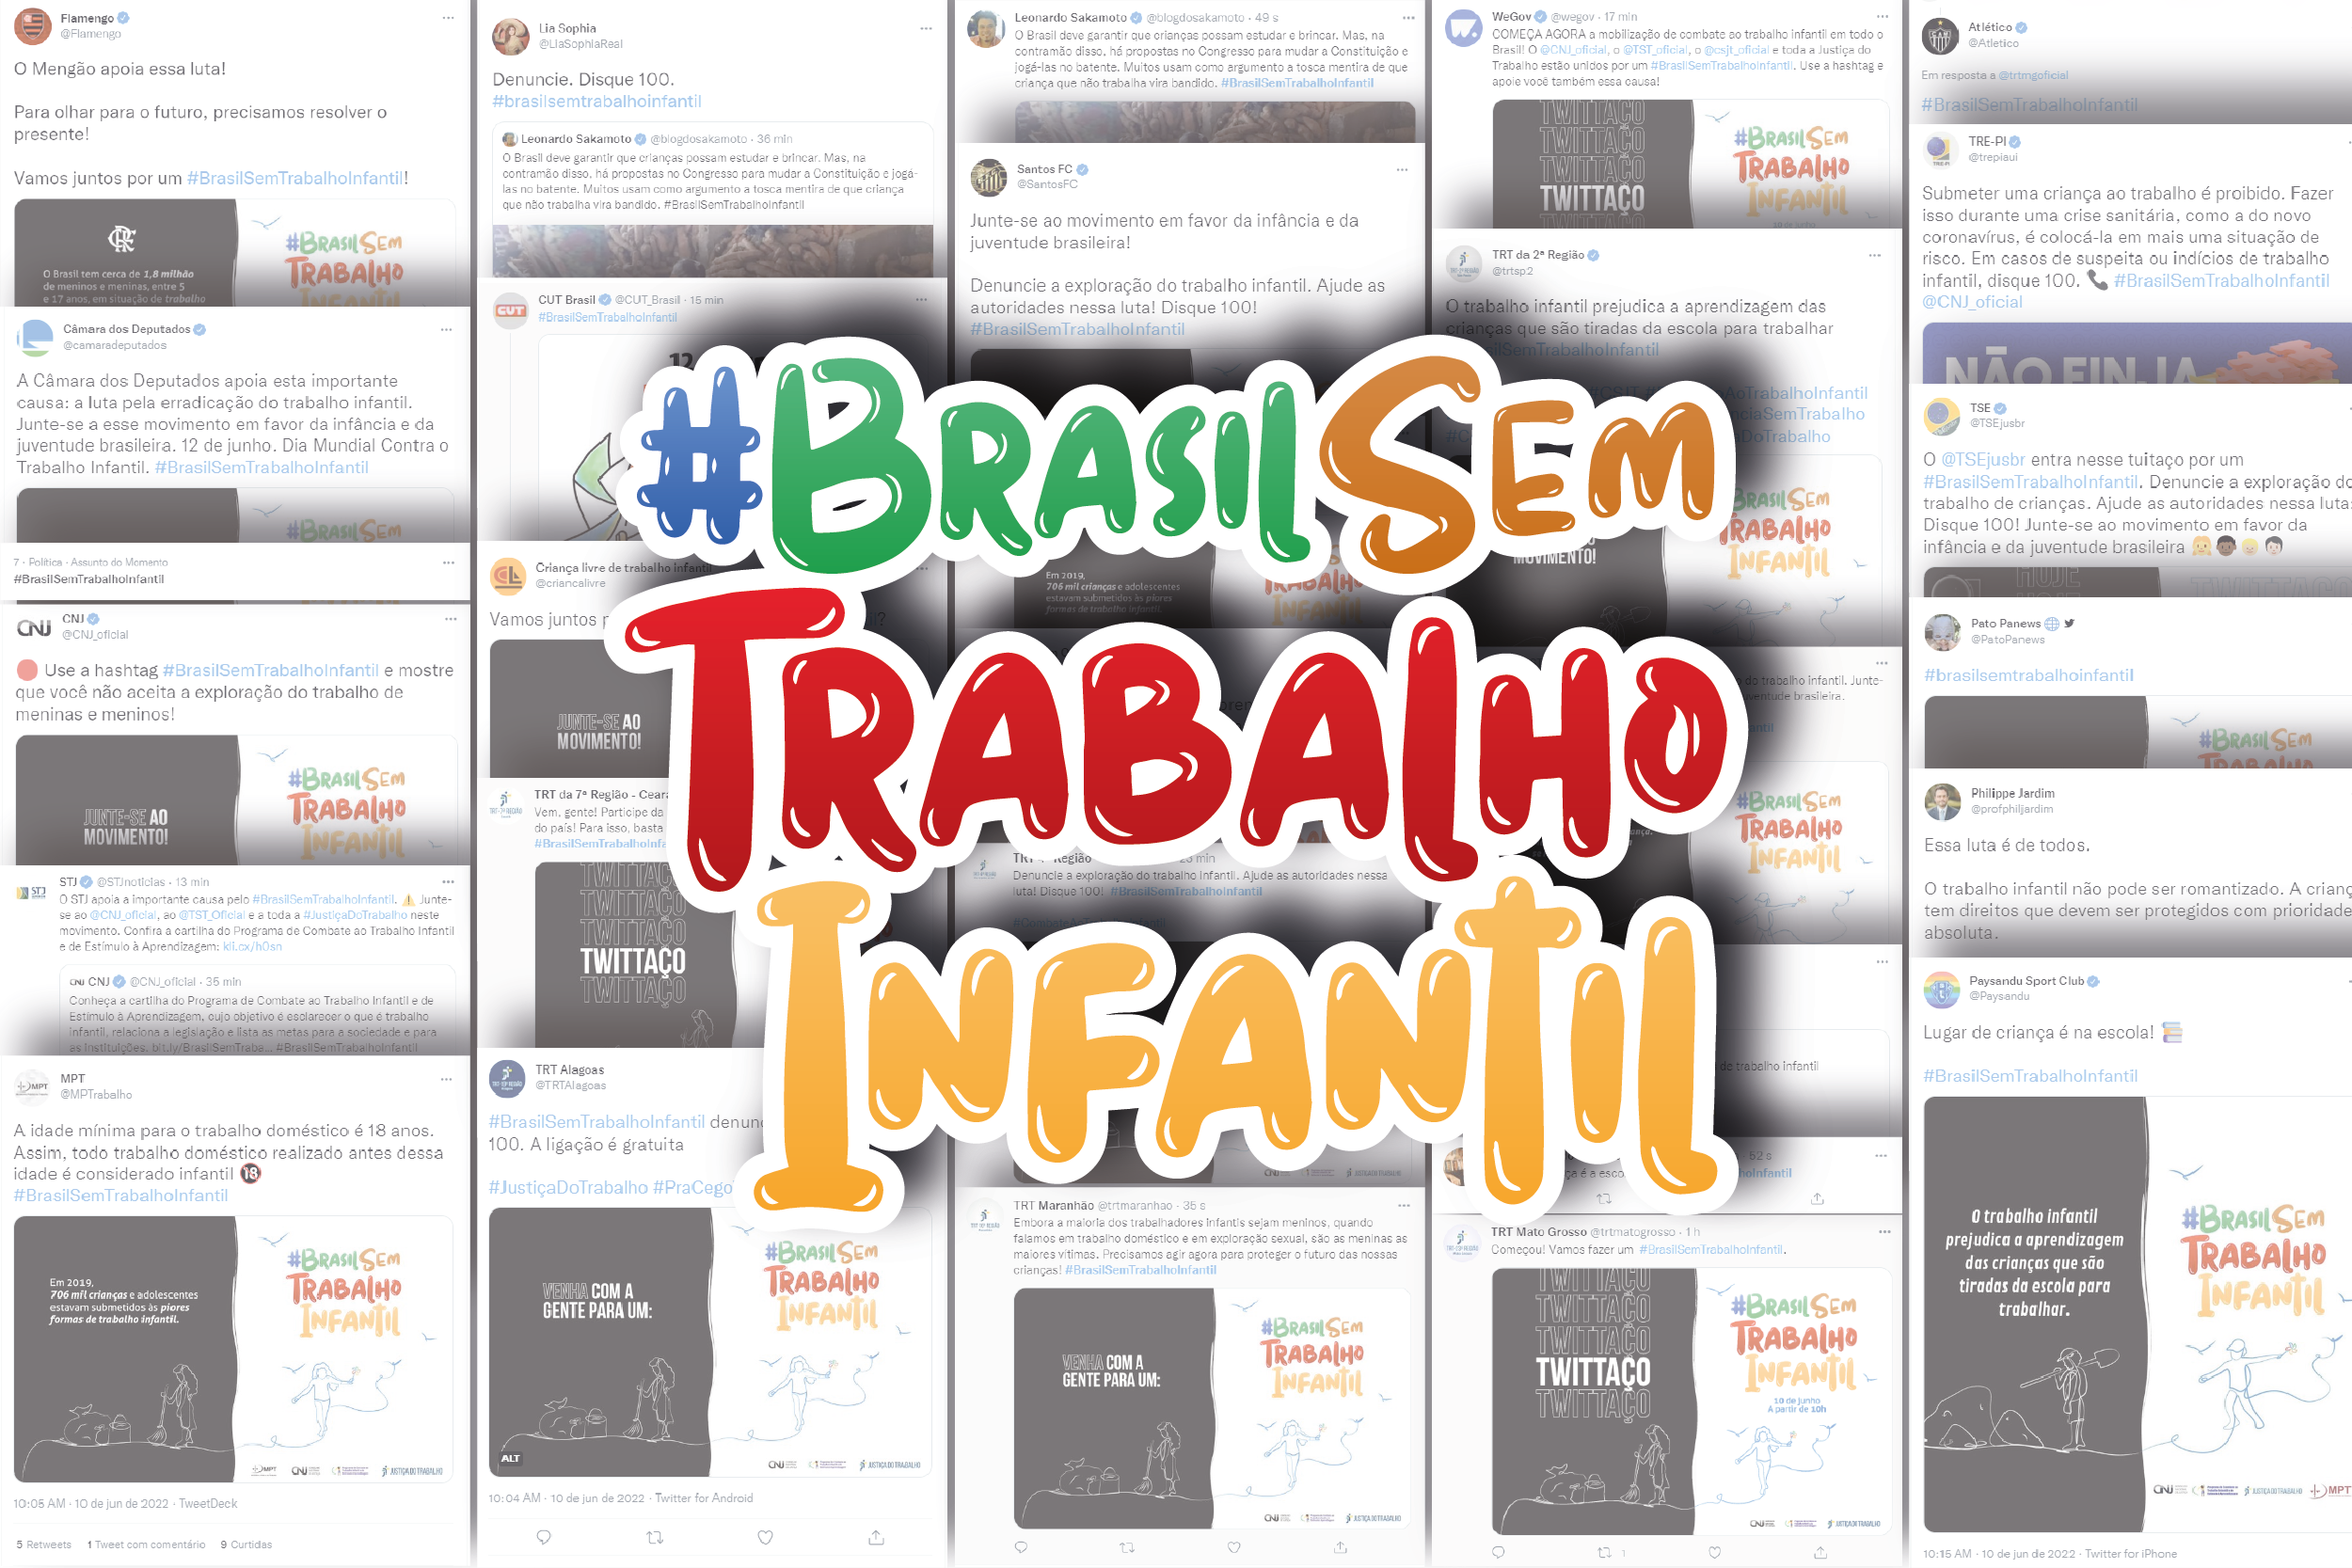 #BrasilSemTrabalhoInfantil esteve entre os assuntos mais comentados no Twitter